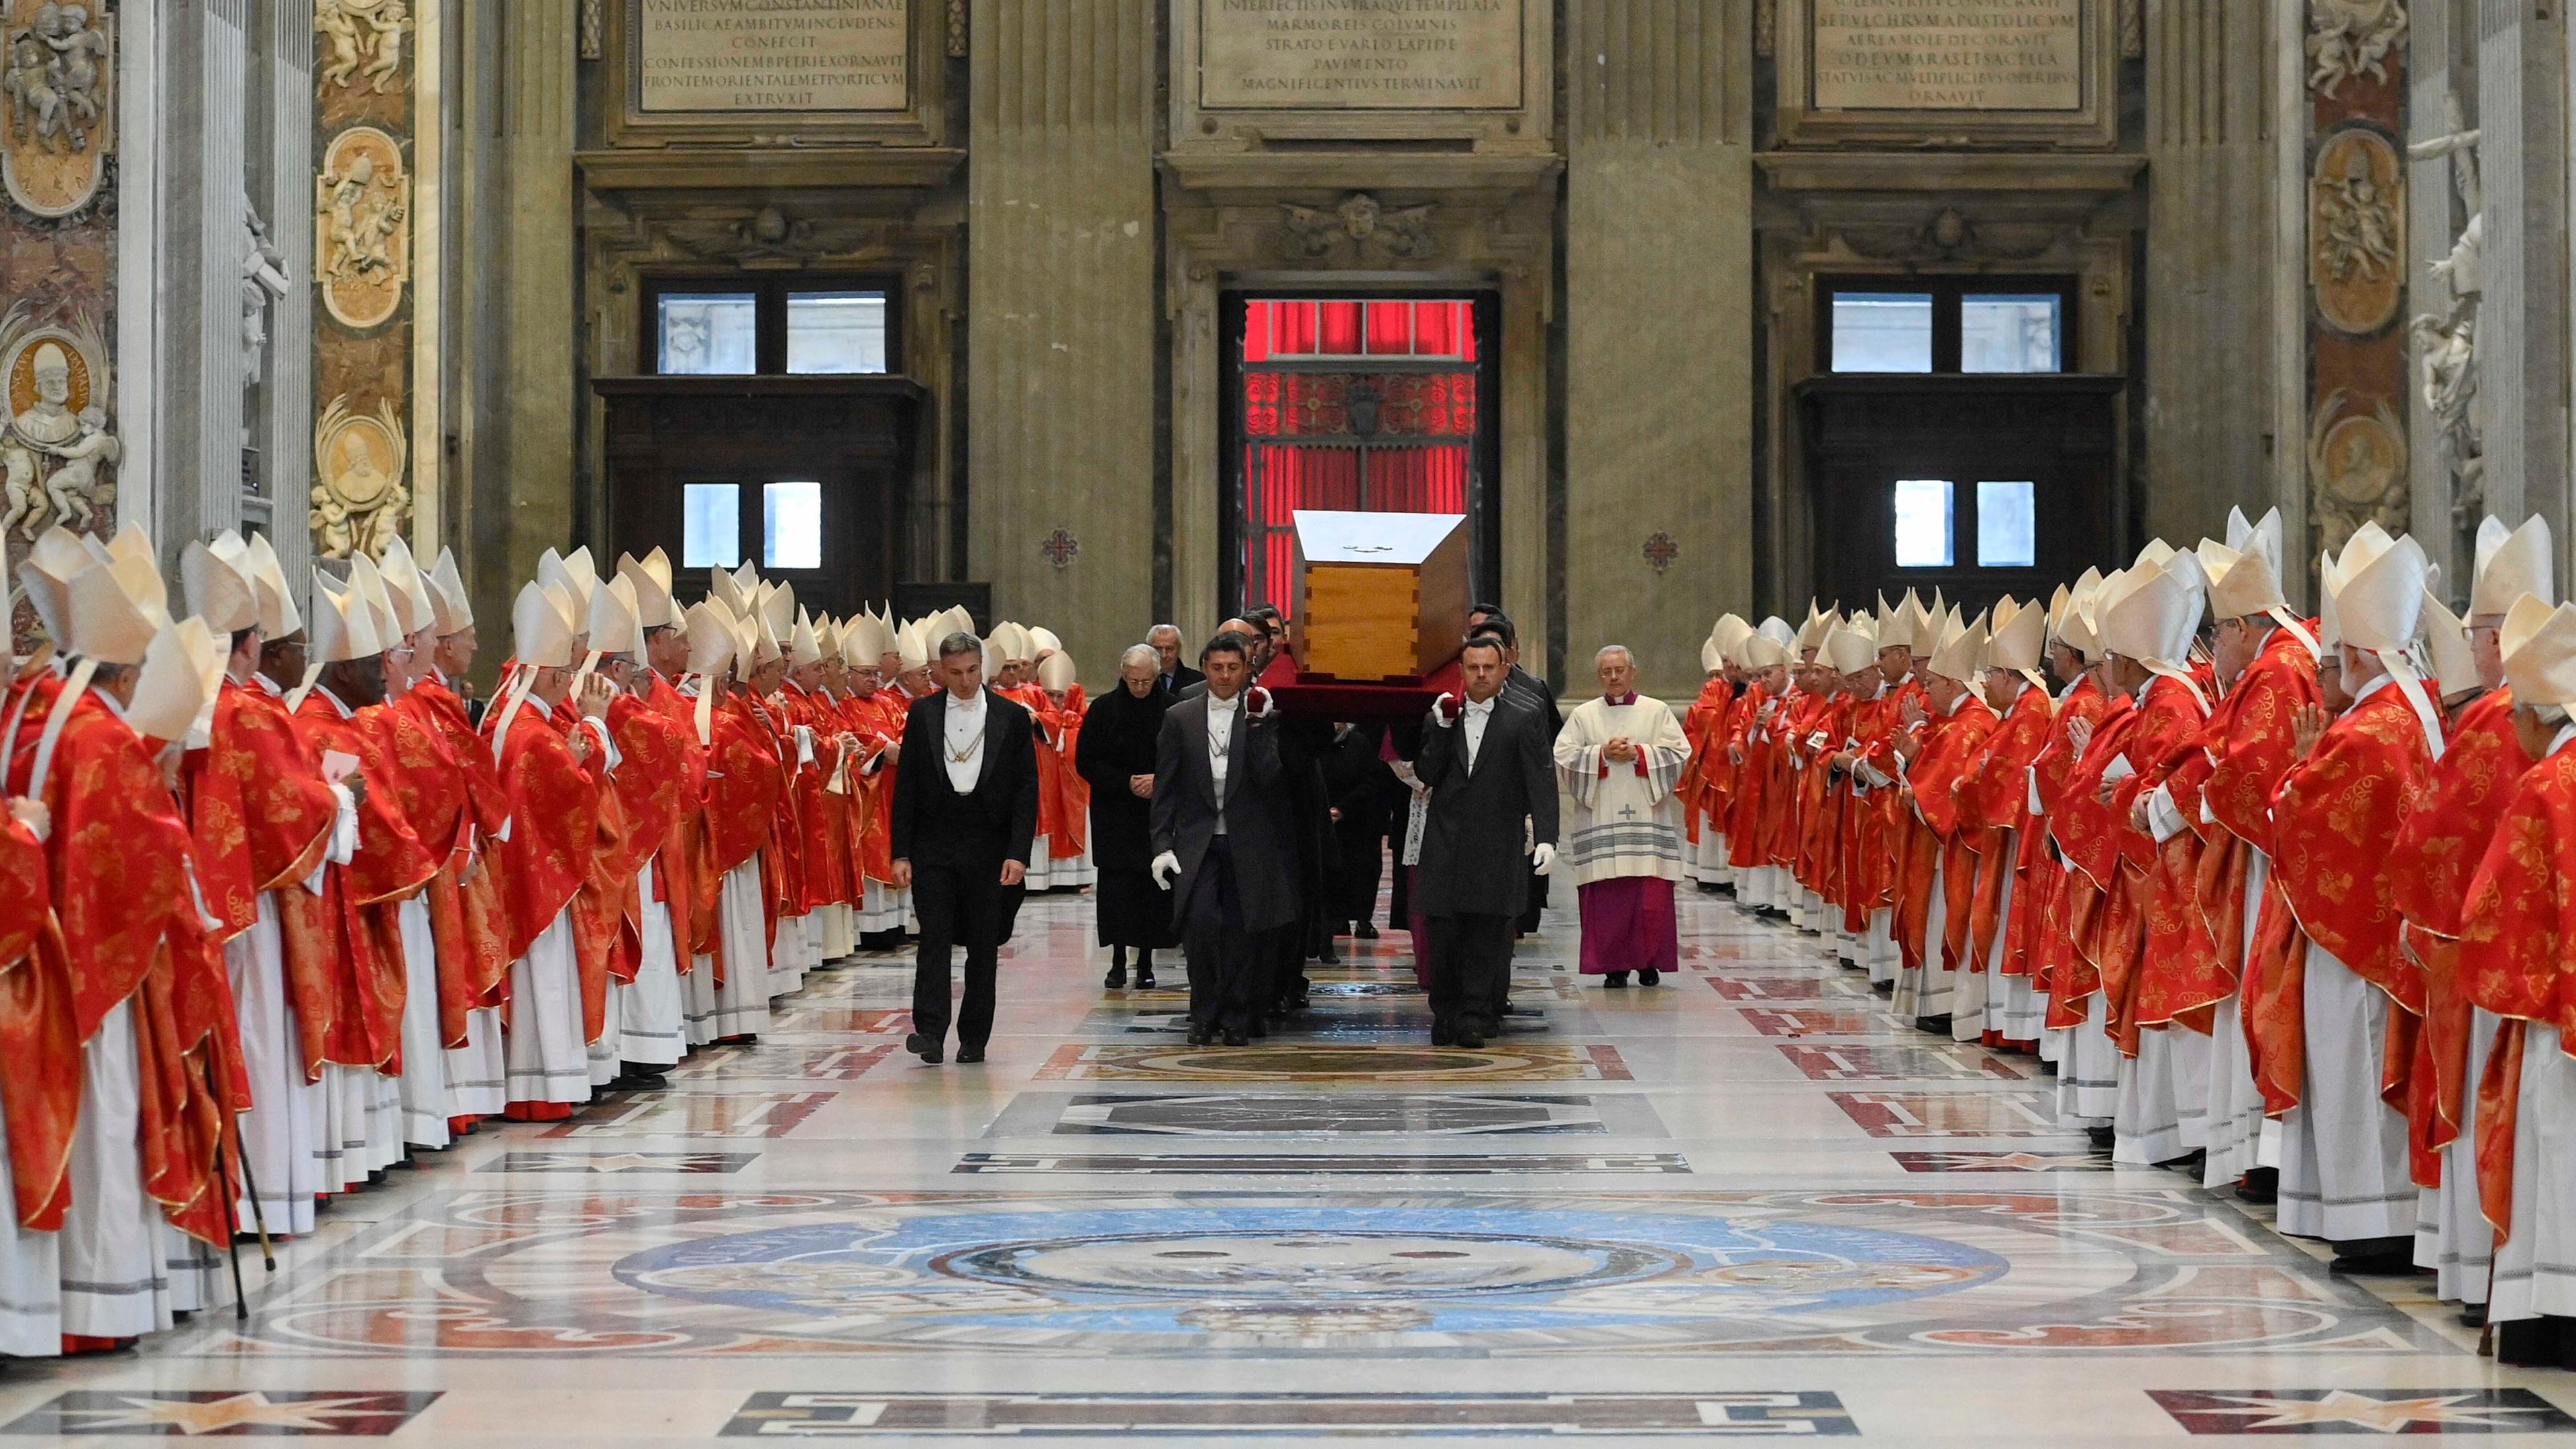 Vatikan, Vatikanstadt: Der Sarg des verstorbenen emeritierten Papstes Benedikt XVI. wird nach der öffentlichen Trauermesse für den emeritierten Papst Benedikt XVI. in den Petersdom getragen.